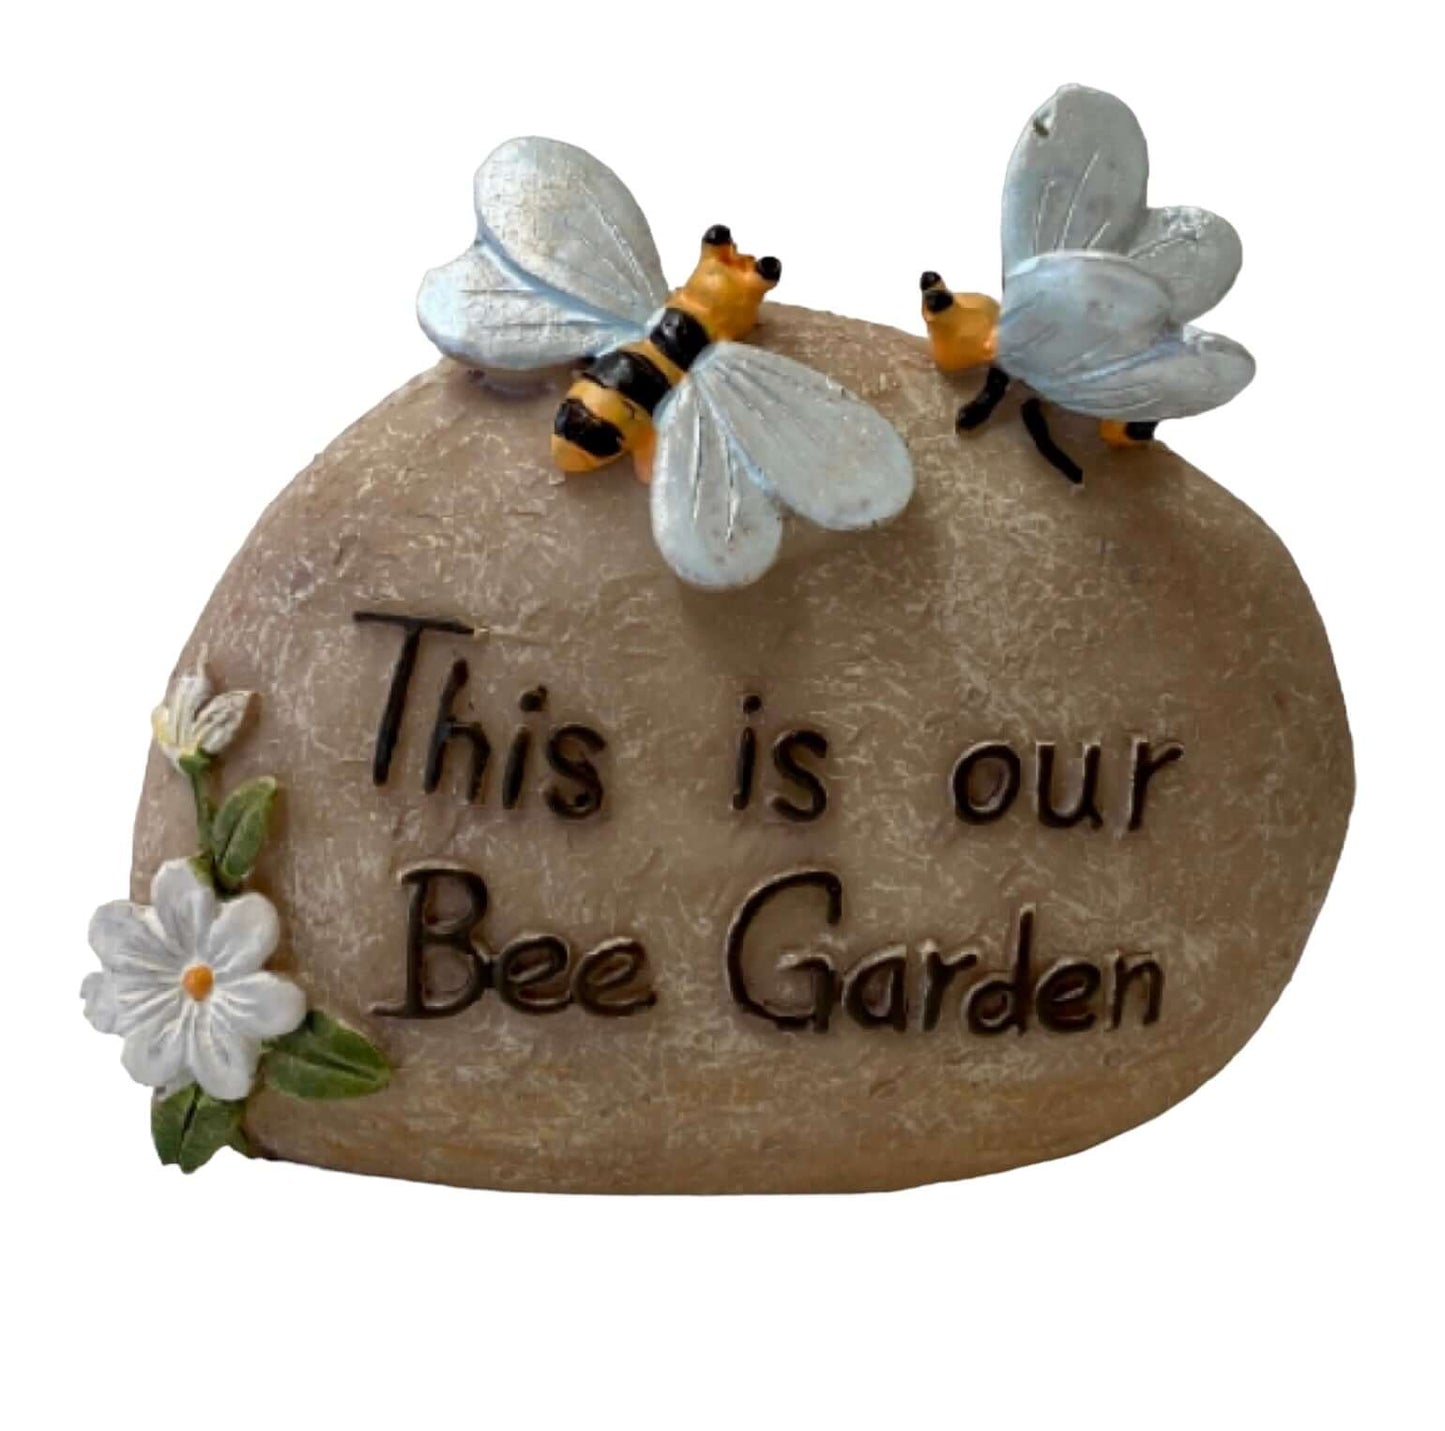 Bee Garden Stone Rock Gardeners Ornament